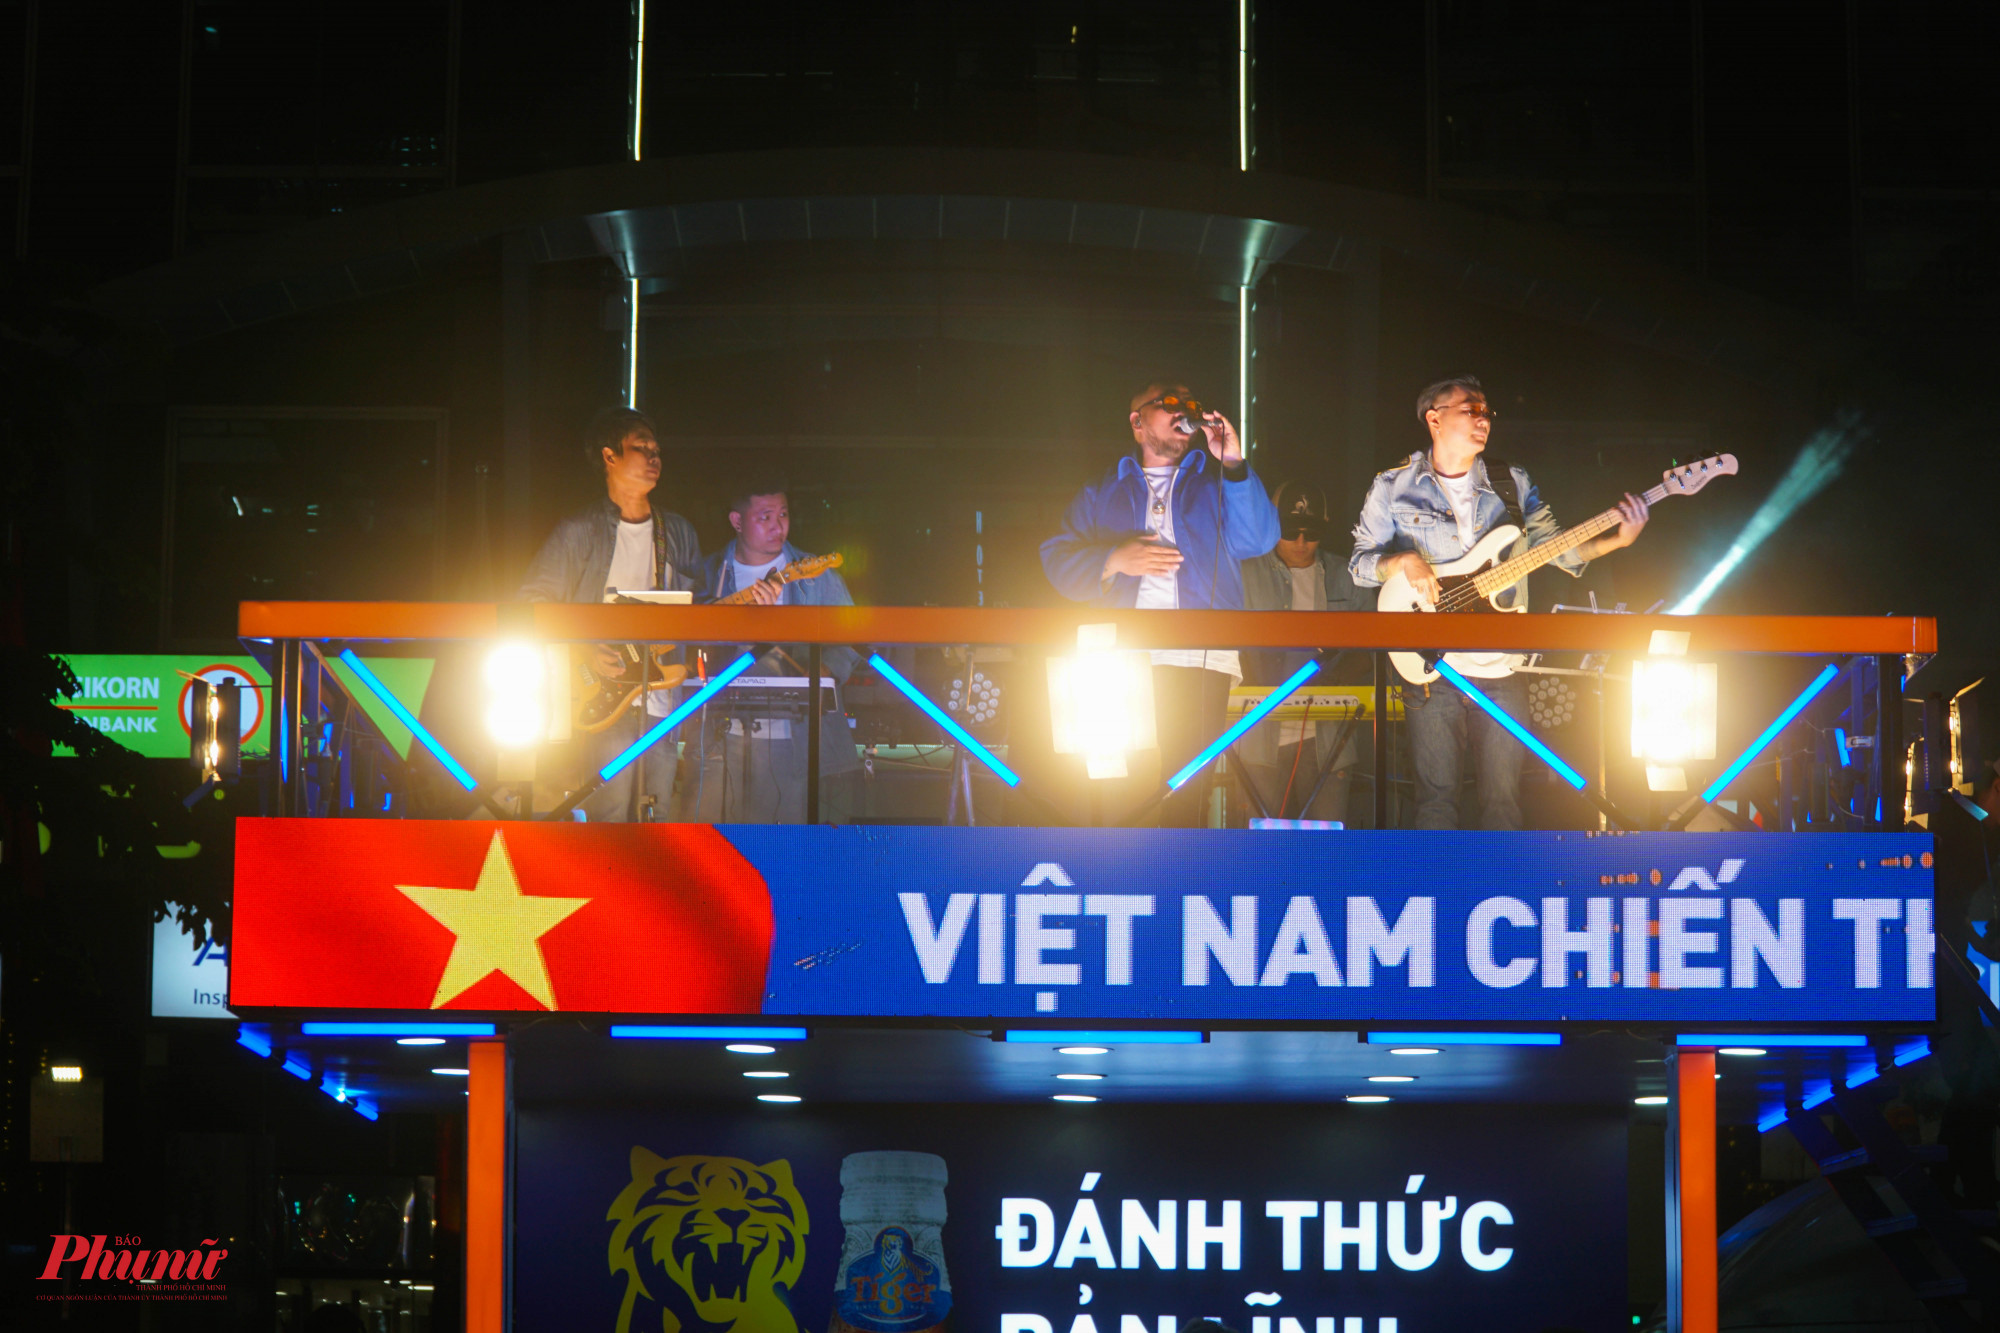 Một ban nhạc chơi cuồn nhiệt ngay giữa sân khấu chính để cổ vũ cho đội tuyển Việt Nam